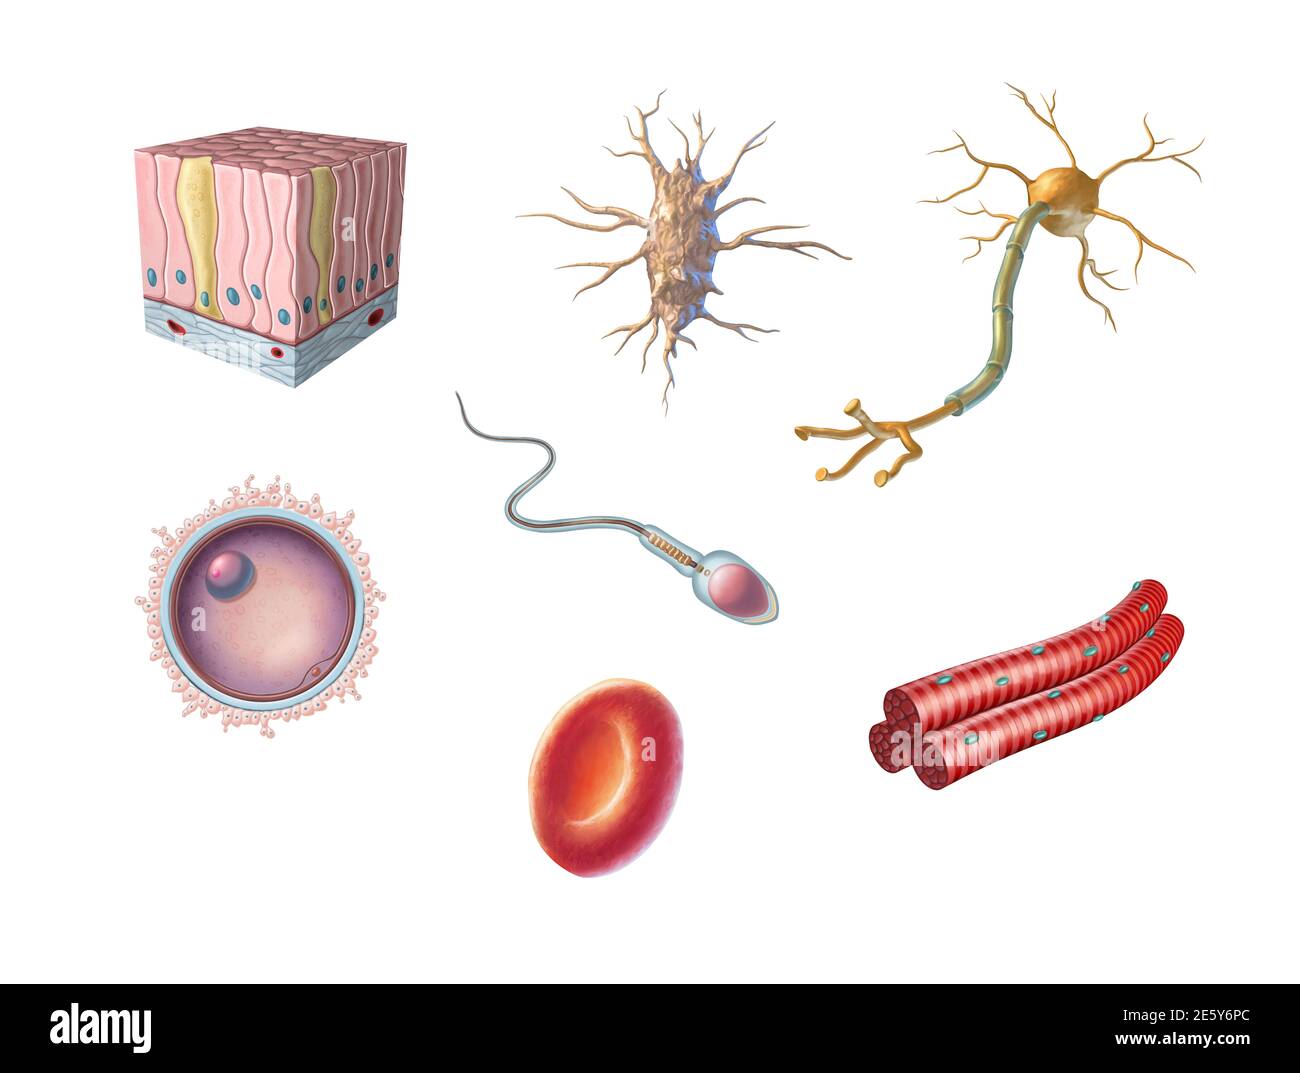 Diferentes tipos de células humanas, incluyendo un óvulo, esperma, glóbulos rojos, osteocito, neurona, músculo esquelético y célula epitelial columnar. Digital Foto de stock